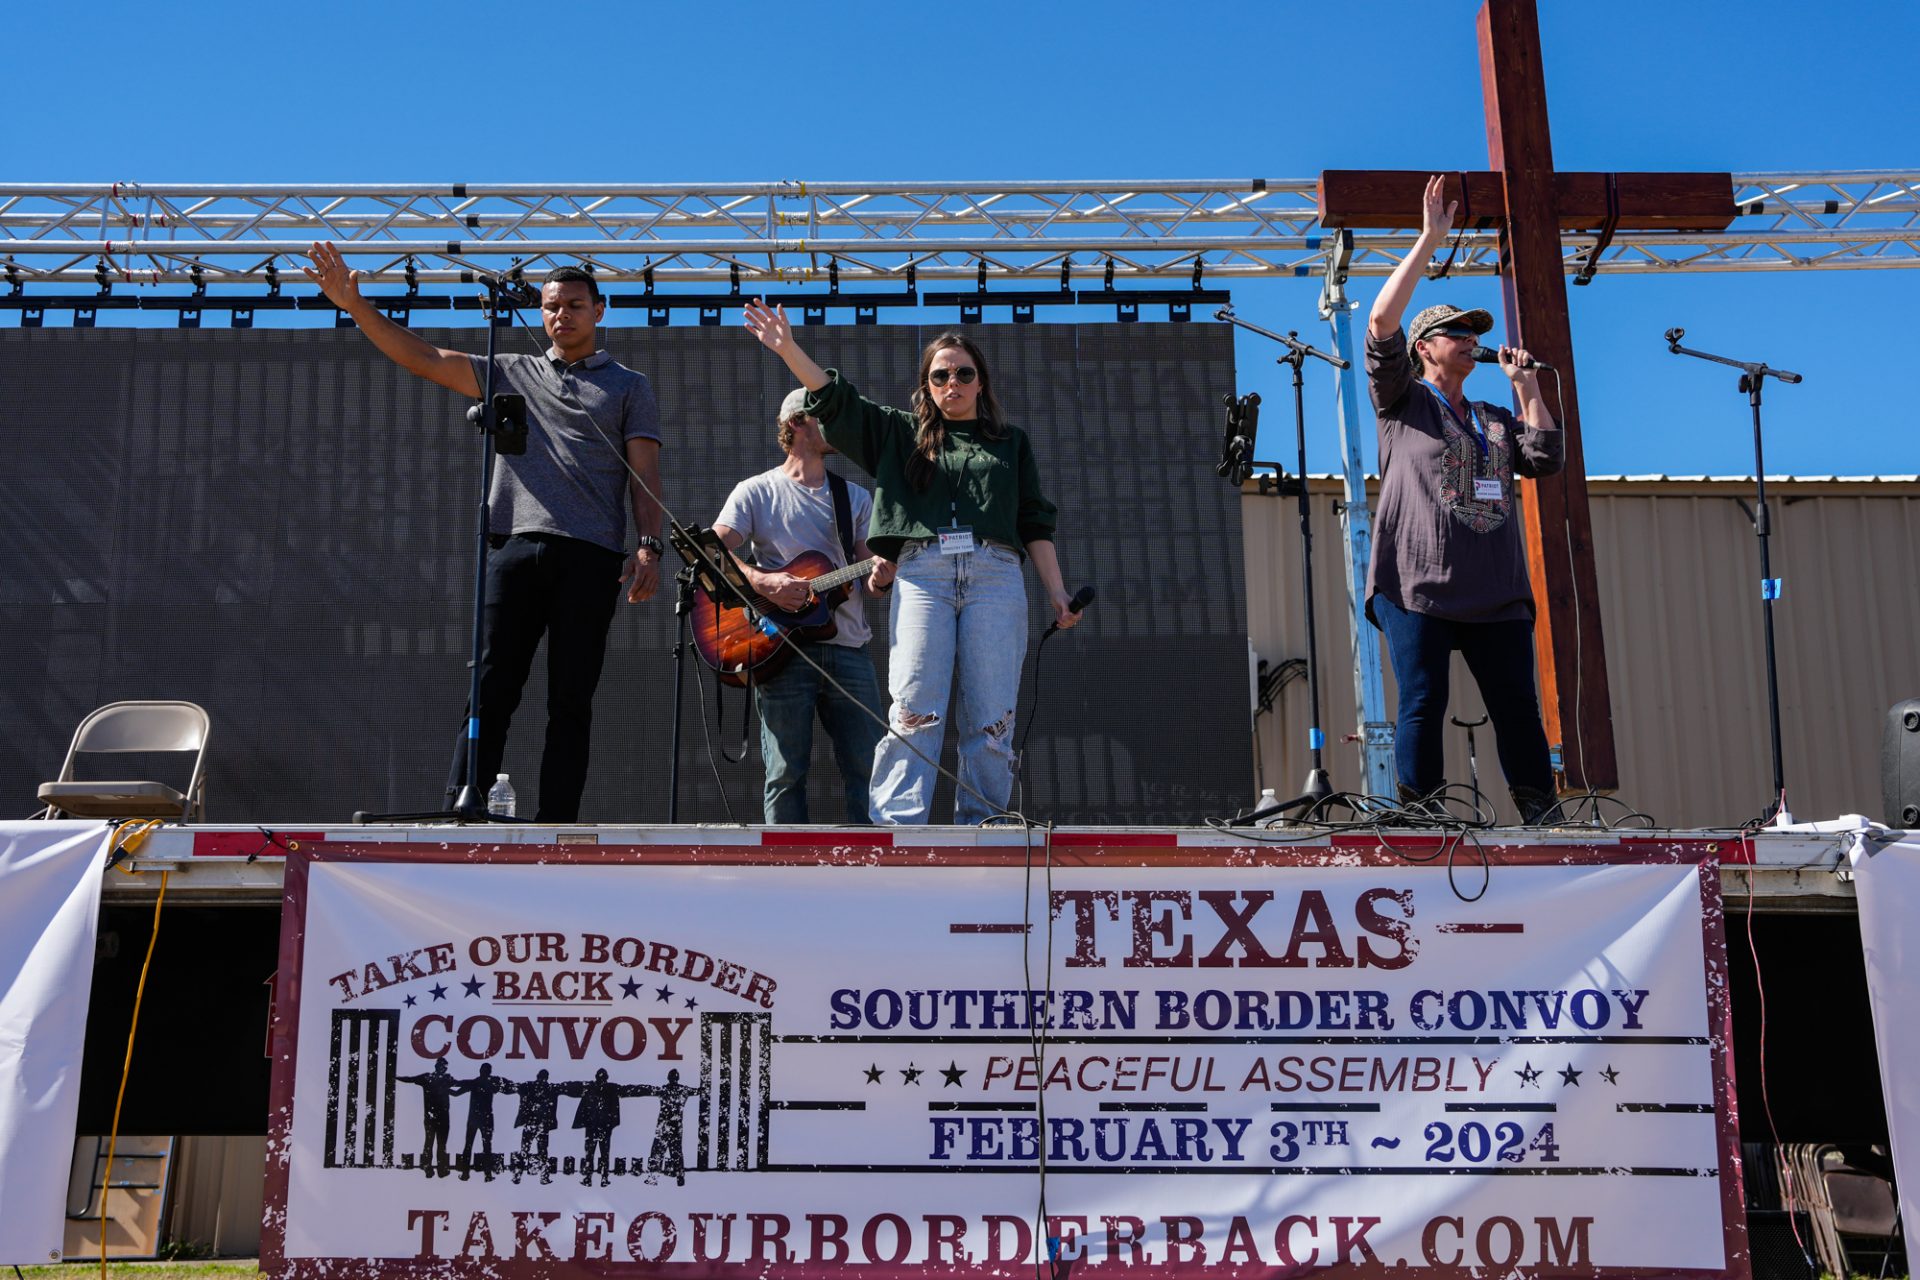 Eine Trump-Kundgebung, ohne Trump: Konservative fordern Grenzsicherheit in Texas